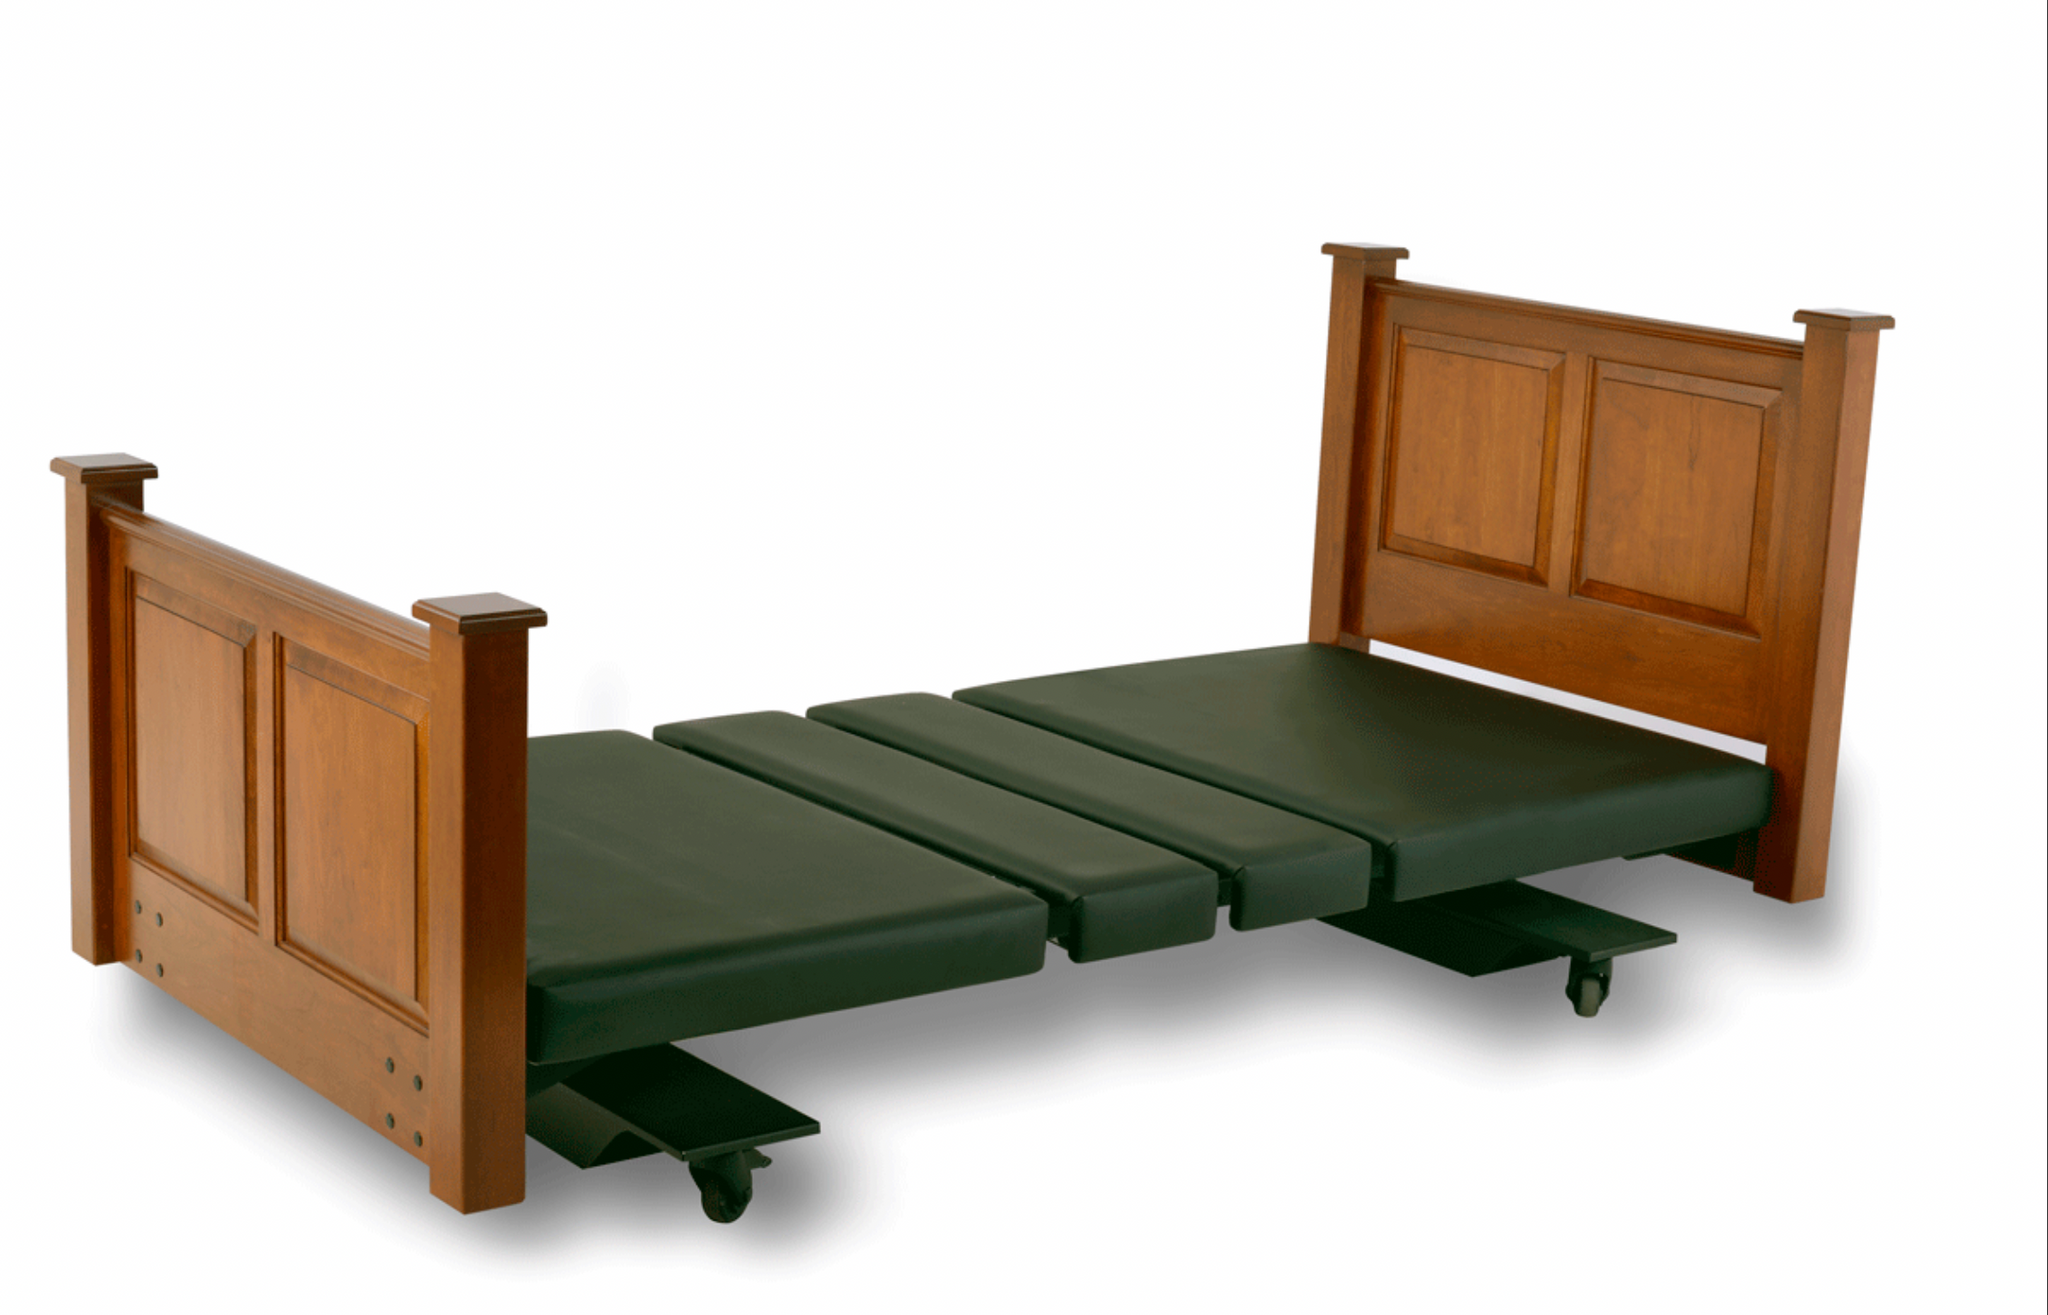 Assured Comfort Mobile Series Hi-Low Adjustable Bed Mattresses & Accessories SKU: FRAME-MS-F